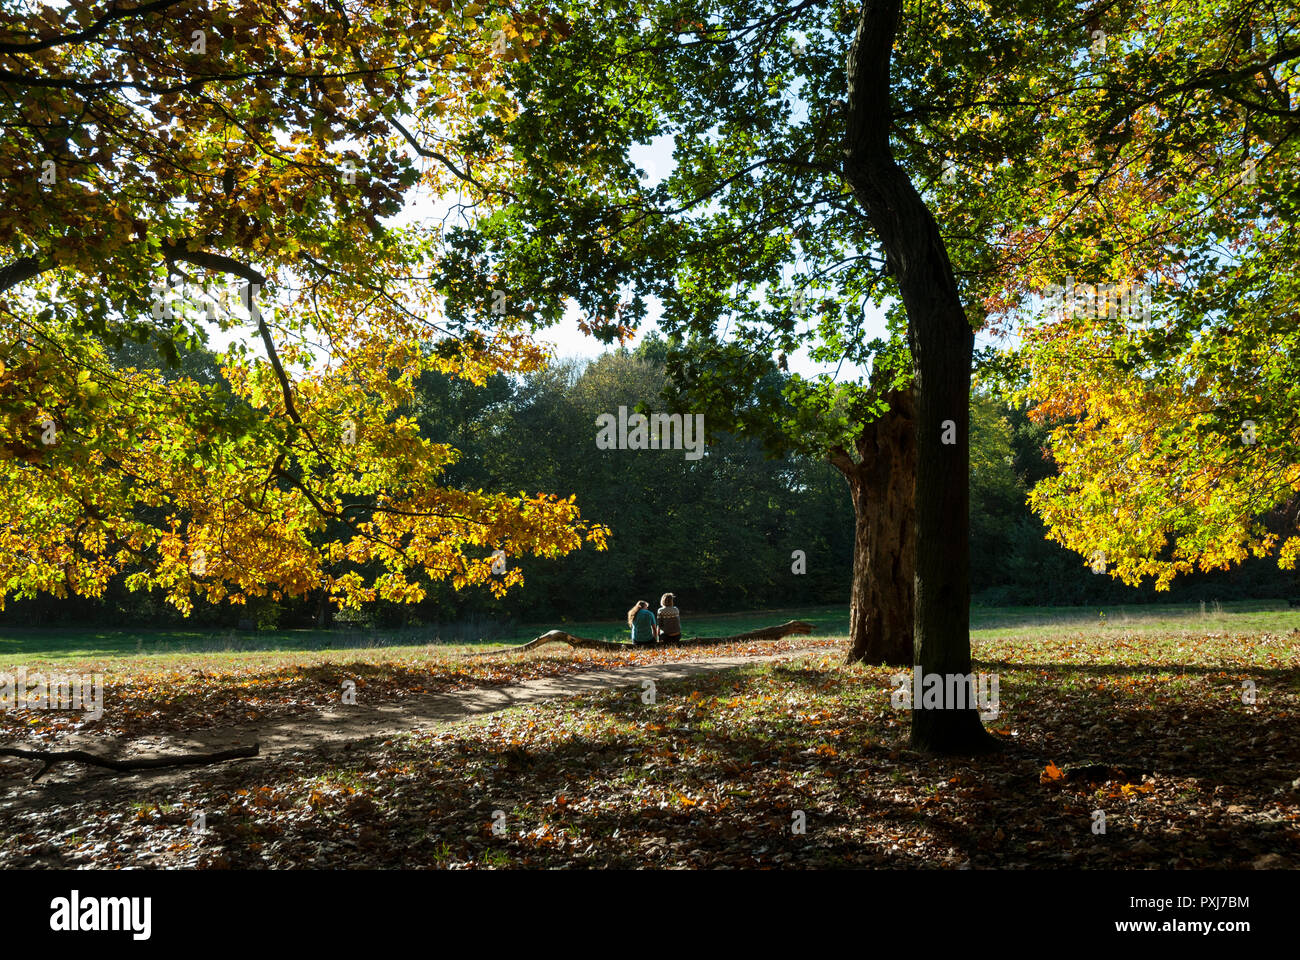 Warme Farben des Herbstes mit Bäumen Farbe drehen; ein junges Paar sind, setzte sich in der Ferne auf einem Baumstamm am Nachmittag Sonne. Hampstead Heath, London. Stockfoto